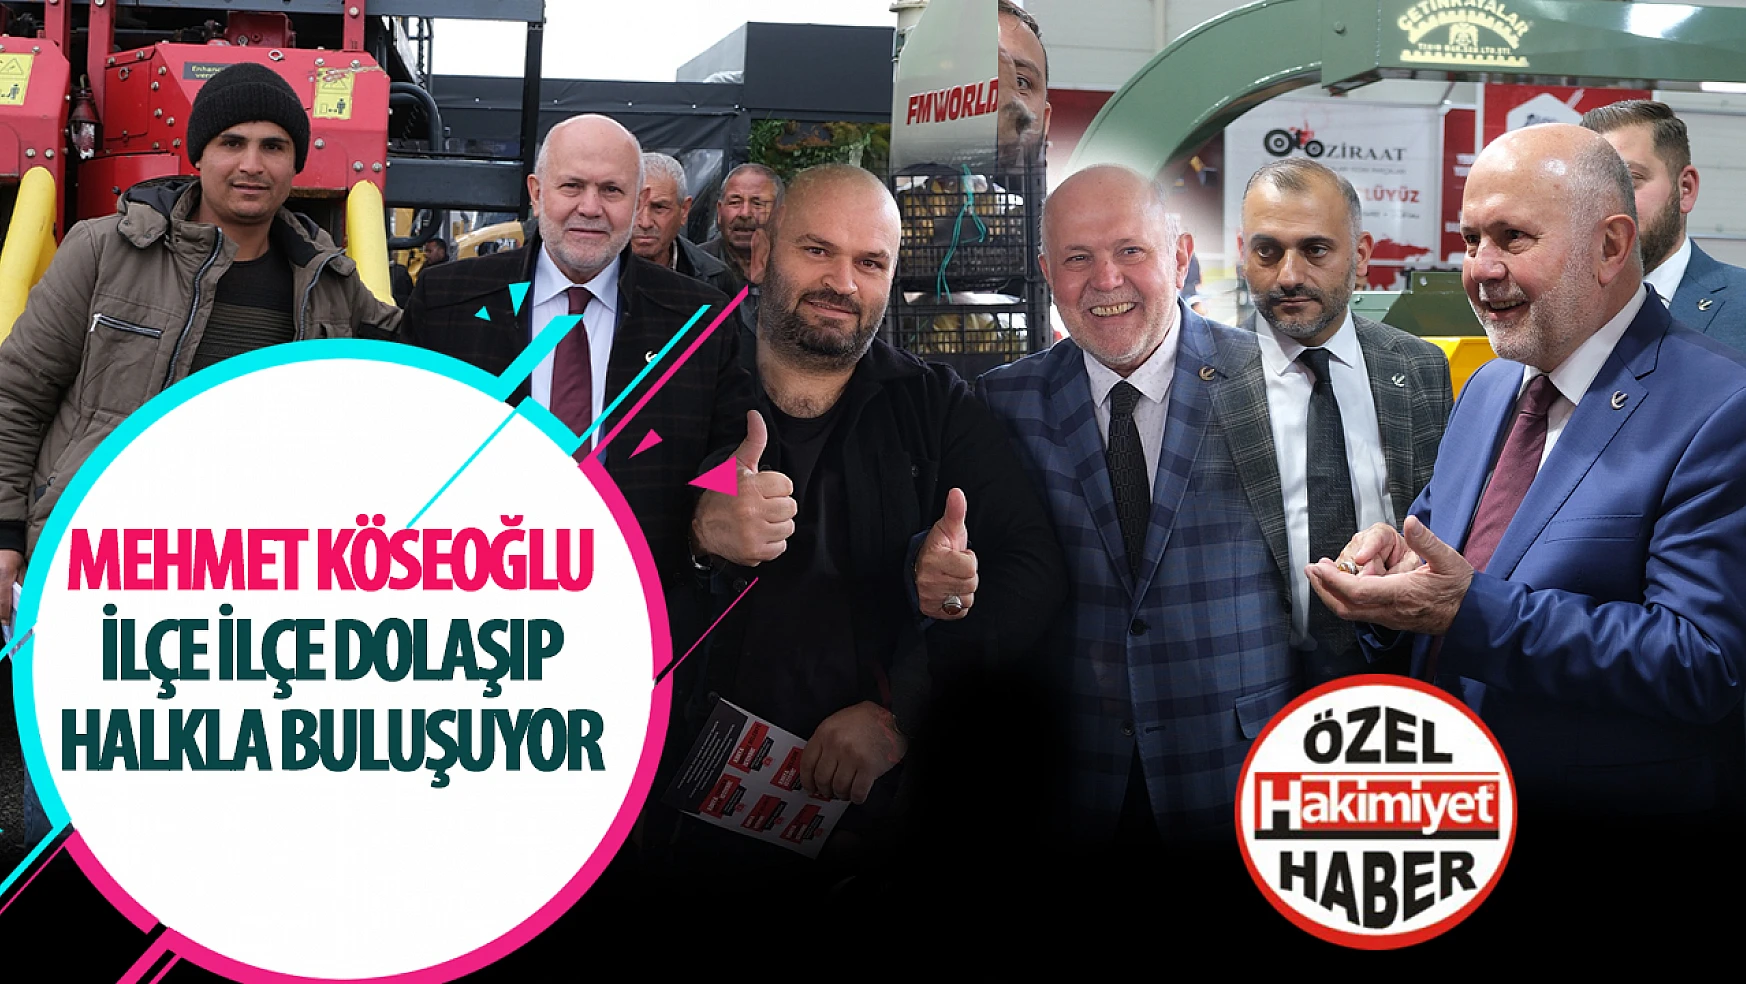 Mehmet Köseoğlu, Konya Büyükşehir Belediye Başkanlığı İçin Halkla Buluşuyor